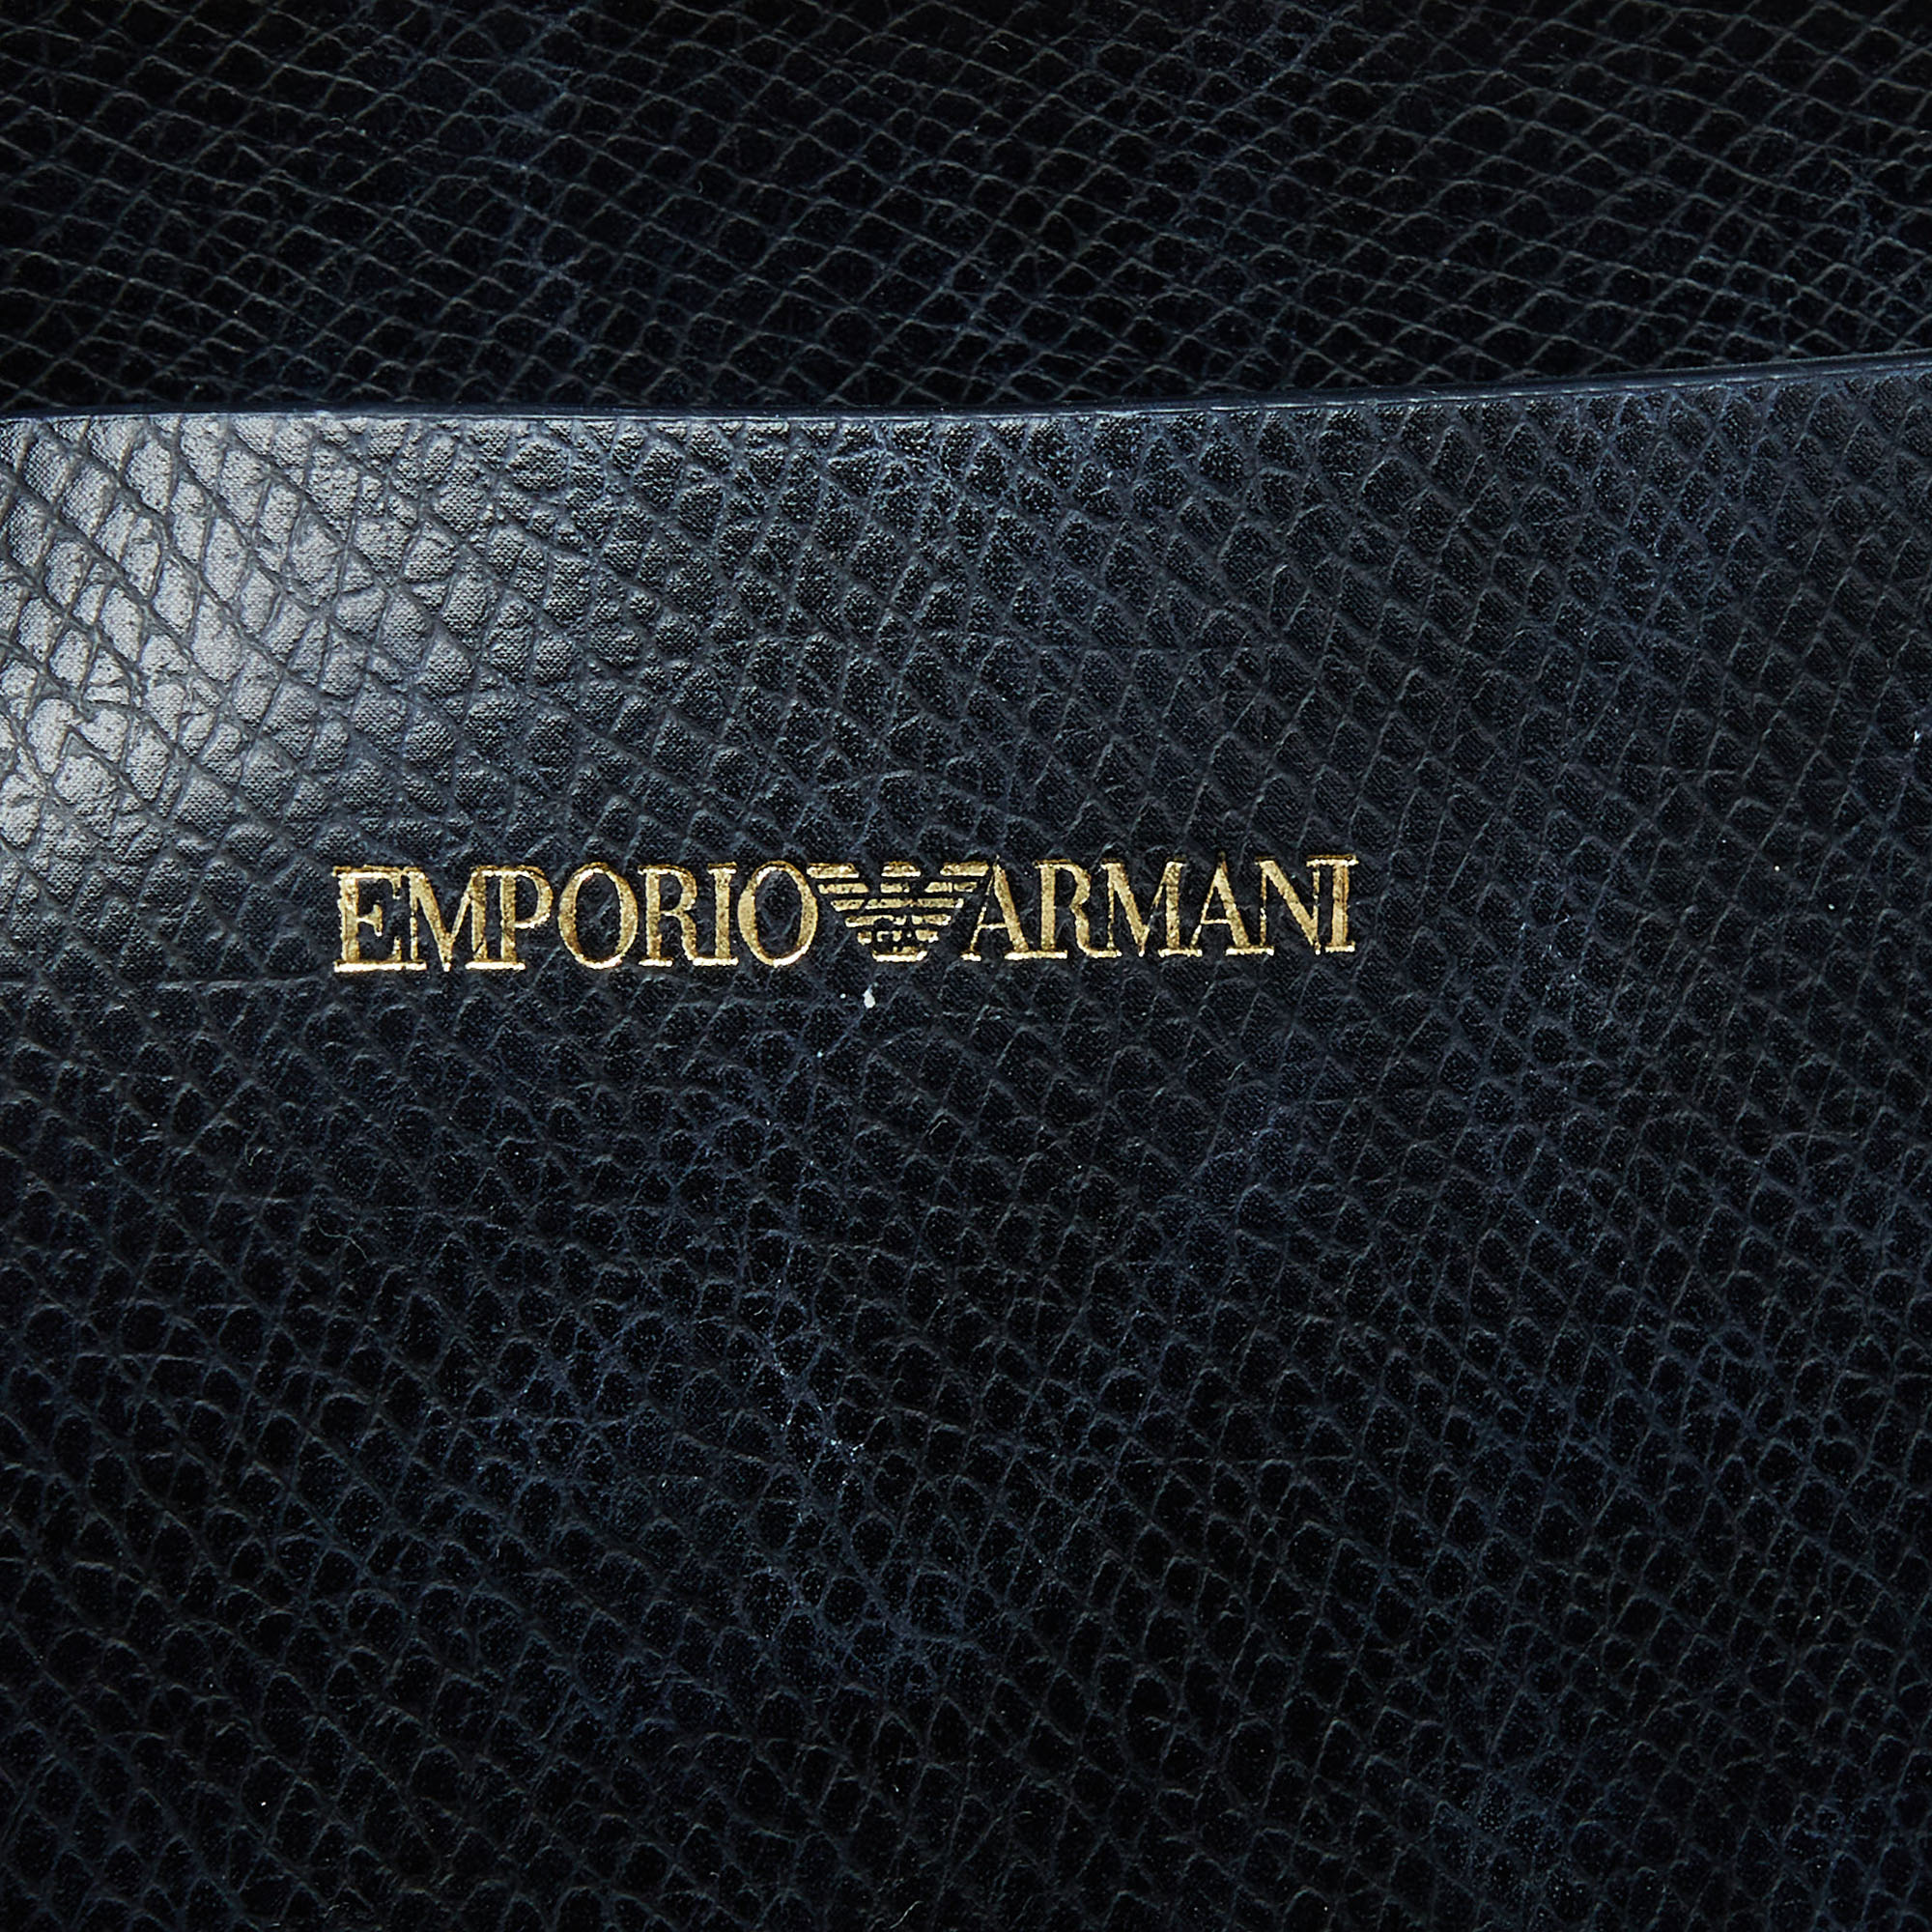 Emporio Armani Black Leather Shopper Tote